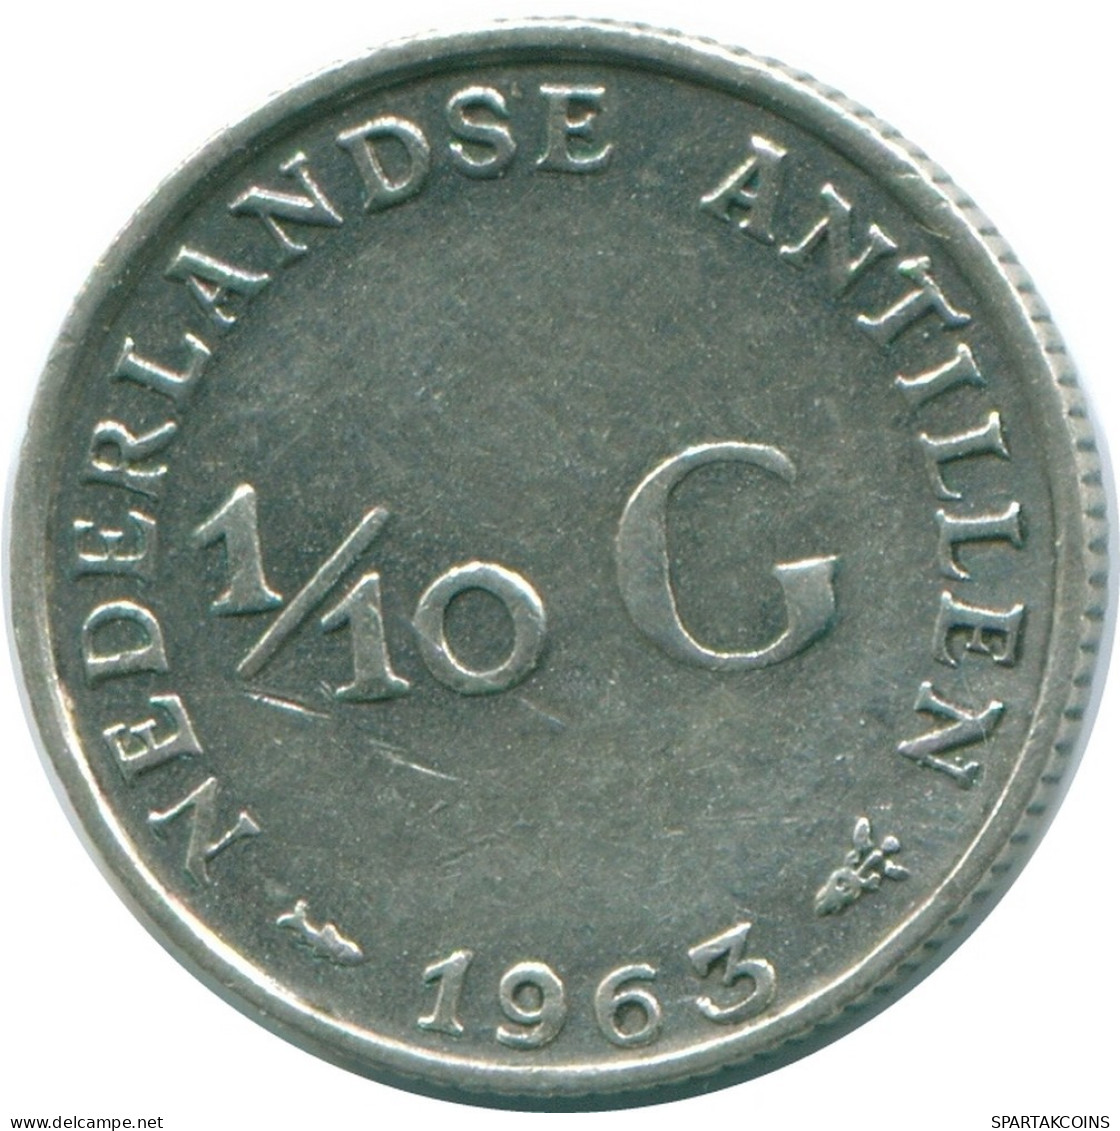 1/10 GULDEN 1963 NIEDERLÄNDISCHE ANTILLEN SILBER Koloniale Münze #NL12529.3.D.A - Antilles Néerlandaises